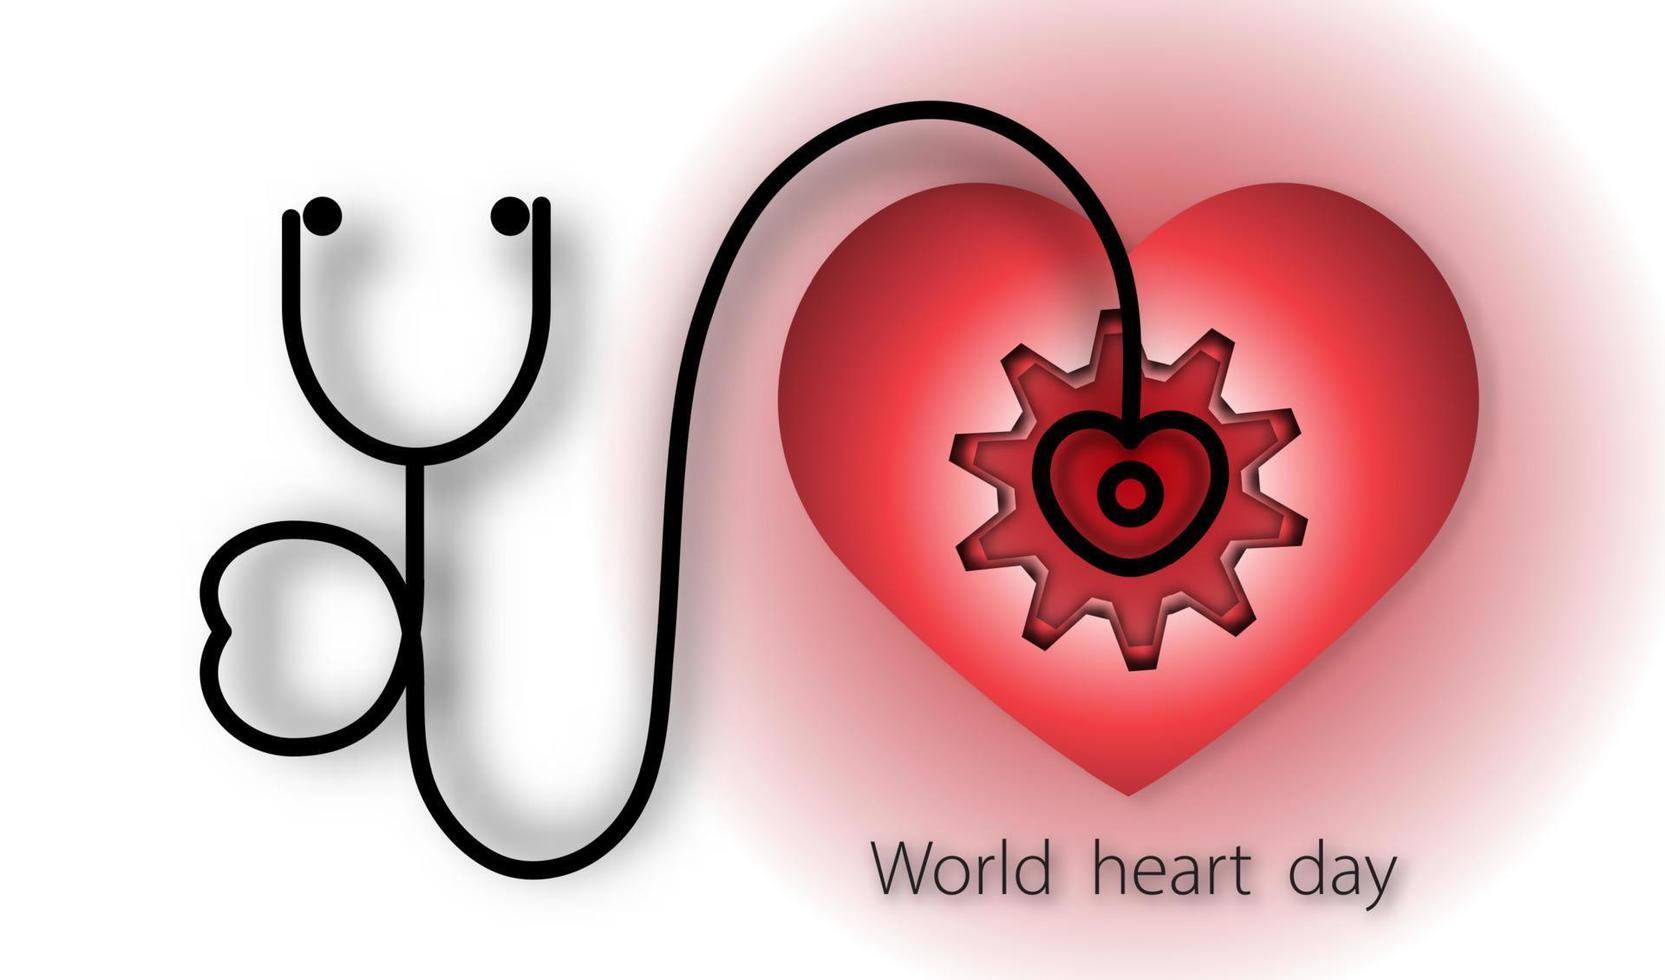 día mundial del corazón con corazón y estetoscopio y equipo sobre fondo rojo de estilo de arte de papel, vector o ilustración con concepto de amor por la salud